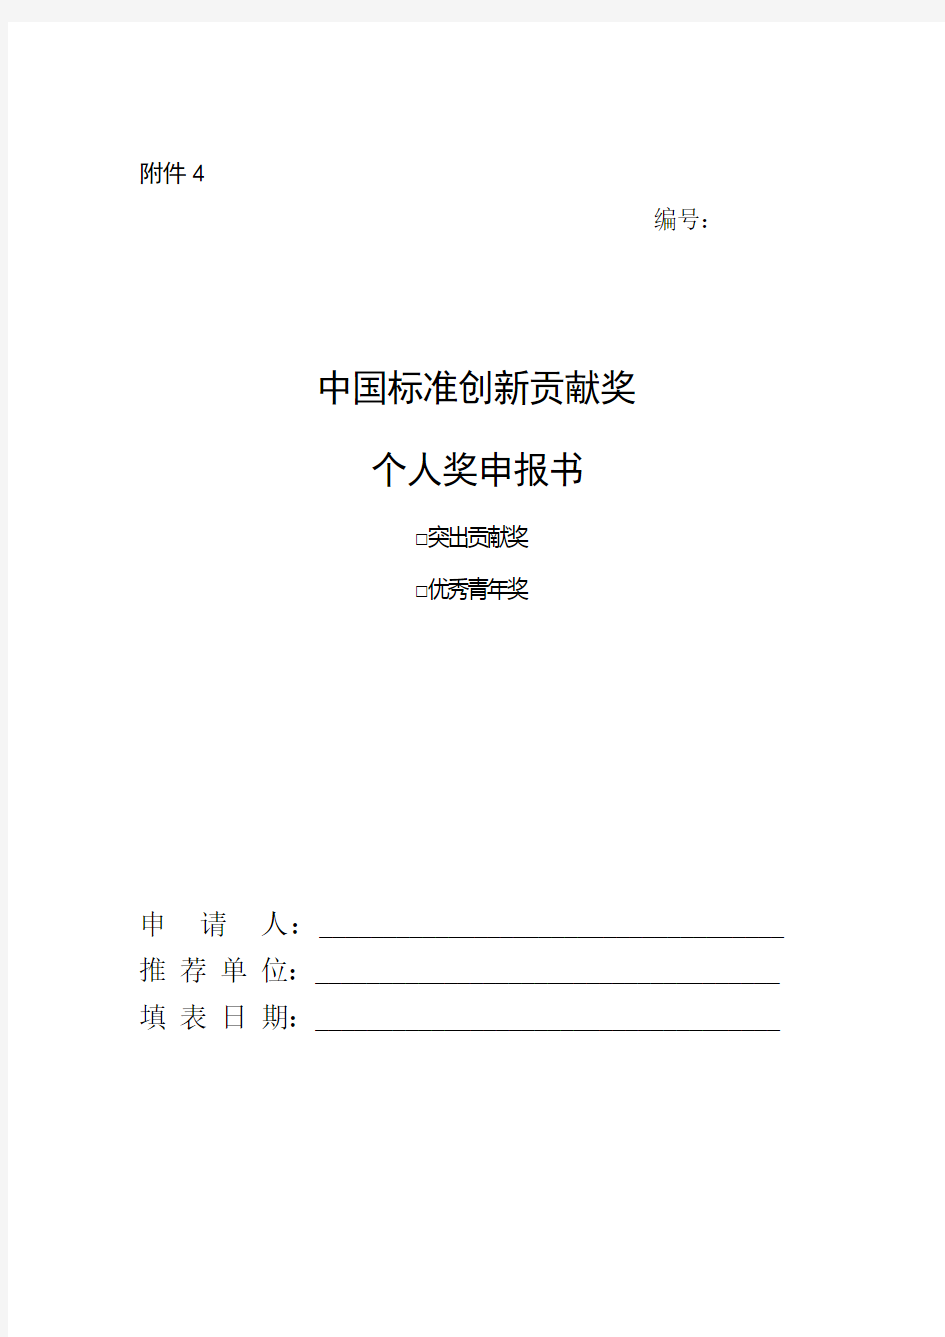 中国标准创新贡献奖个人奖申报书-国家军用标准